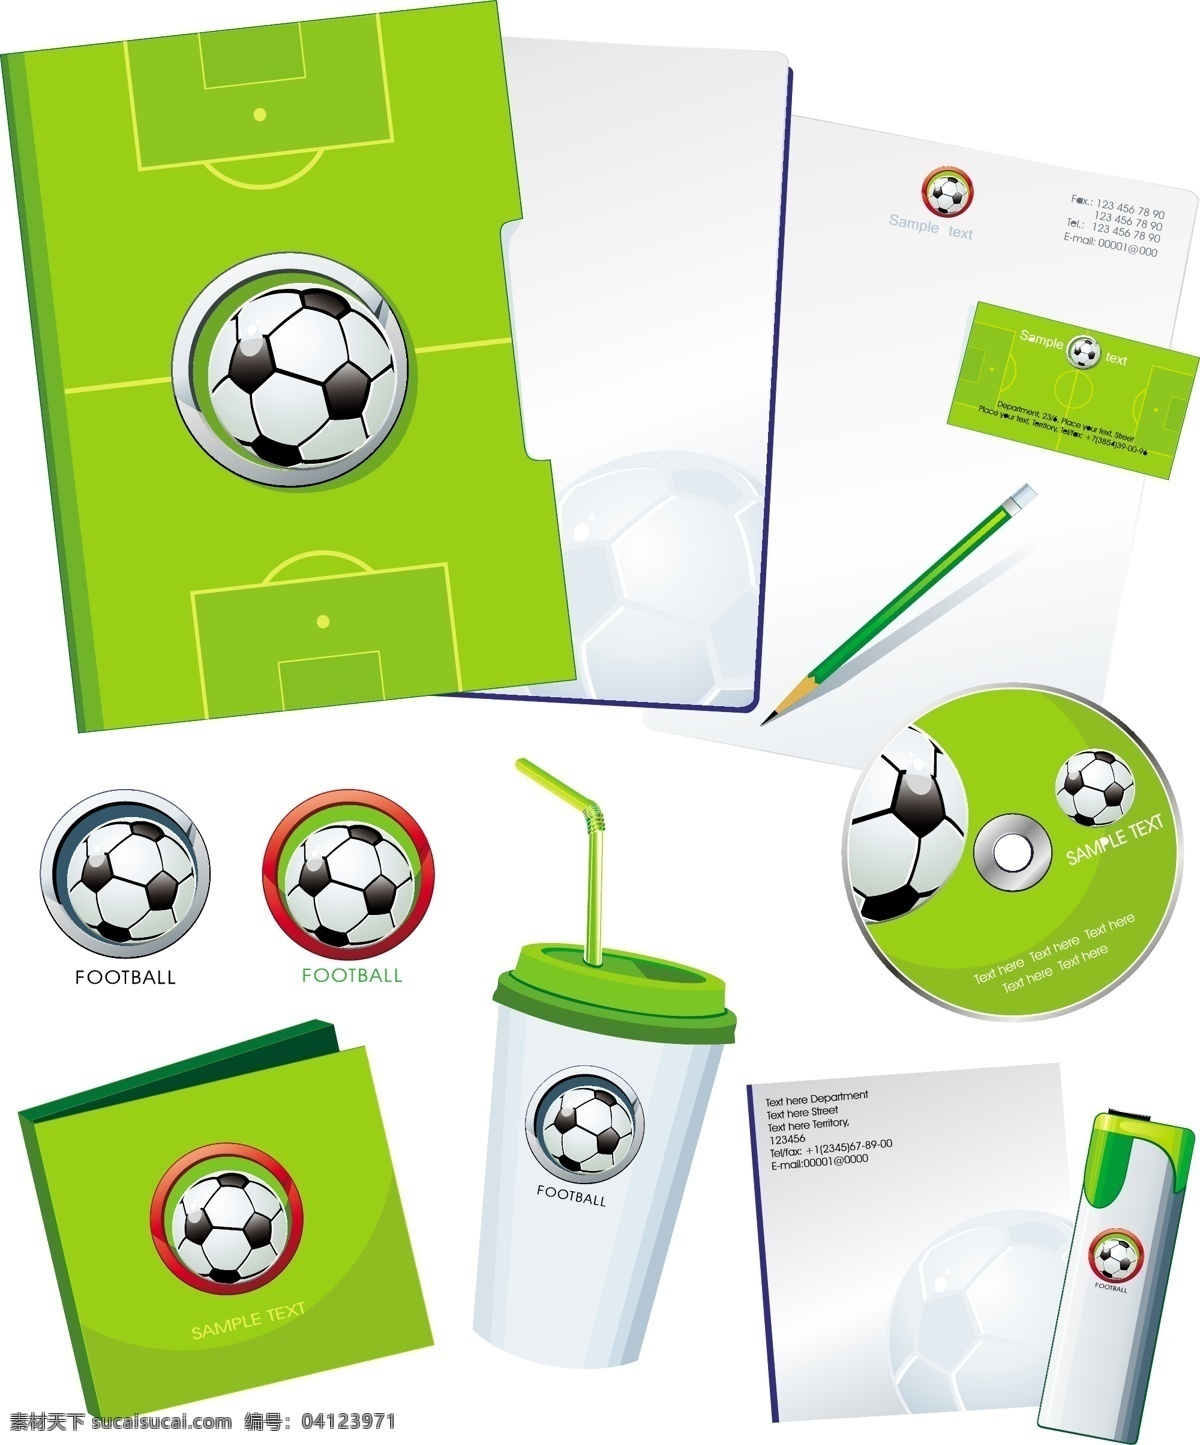 足球 主题 矢量 cd vi 光盘 画册 矢量素材 世界杯 文件夹 信封 足球场 矢量图 其他矢量图